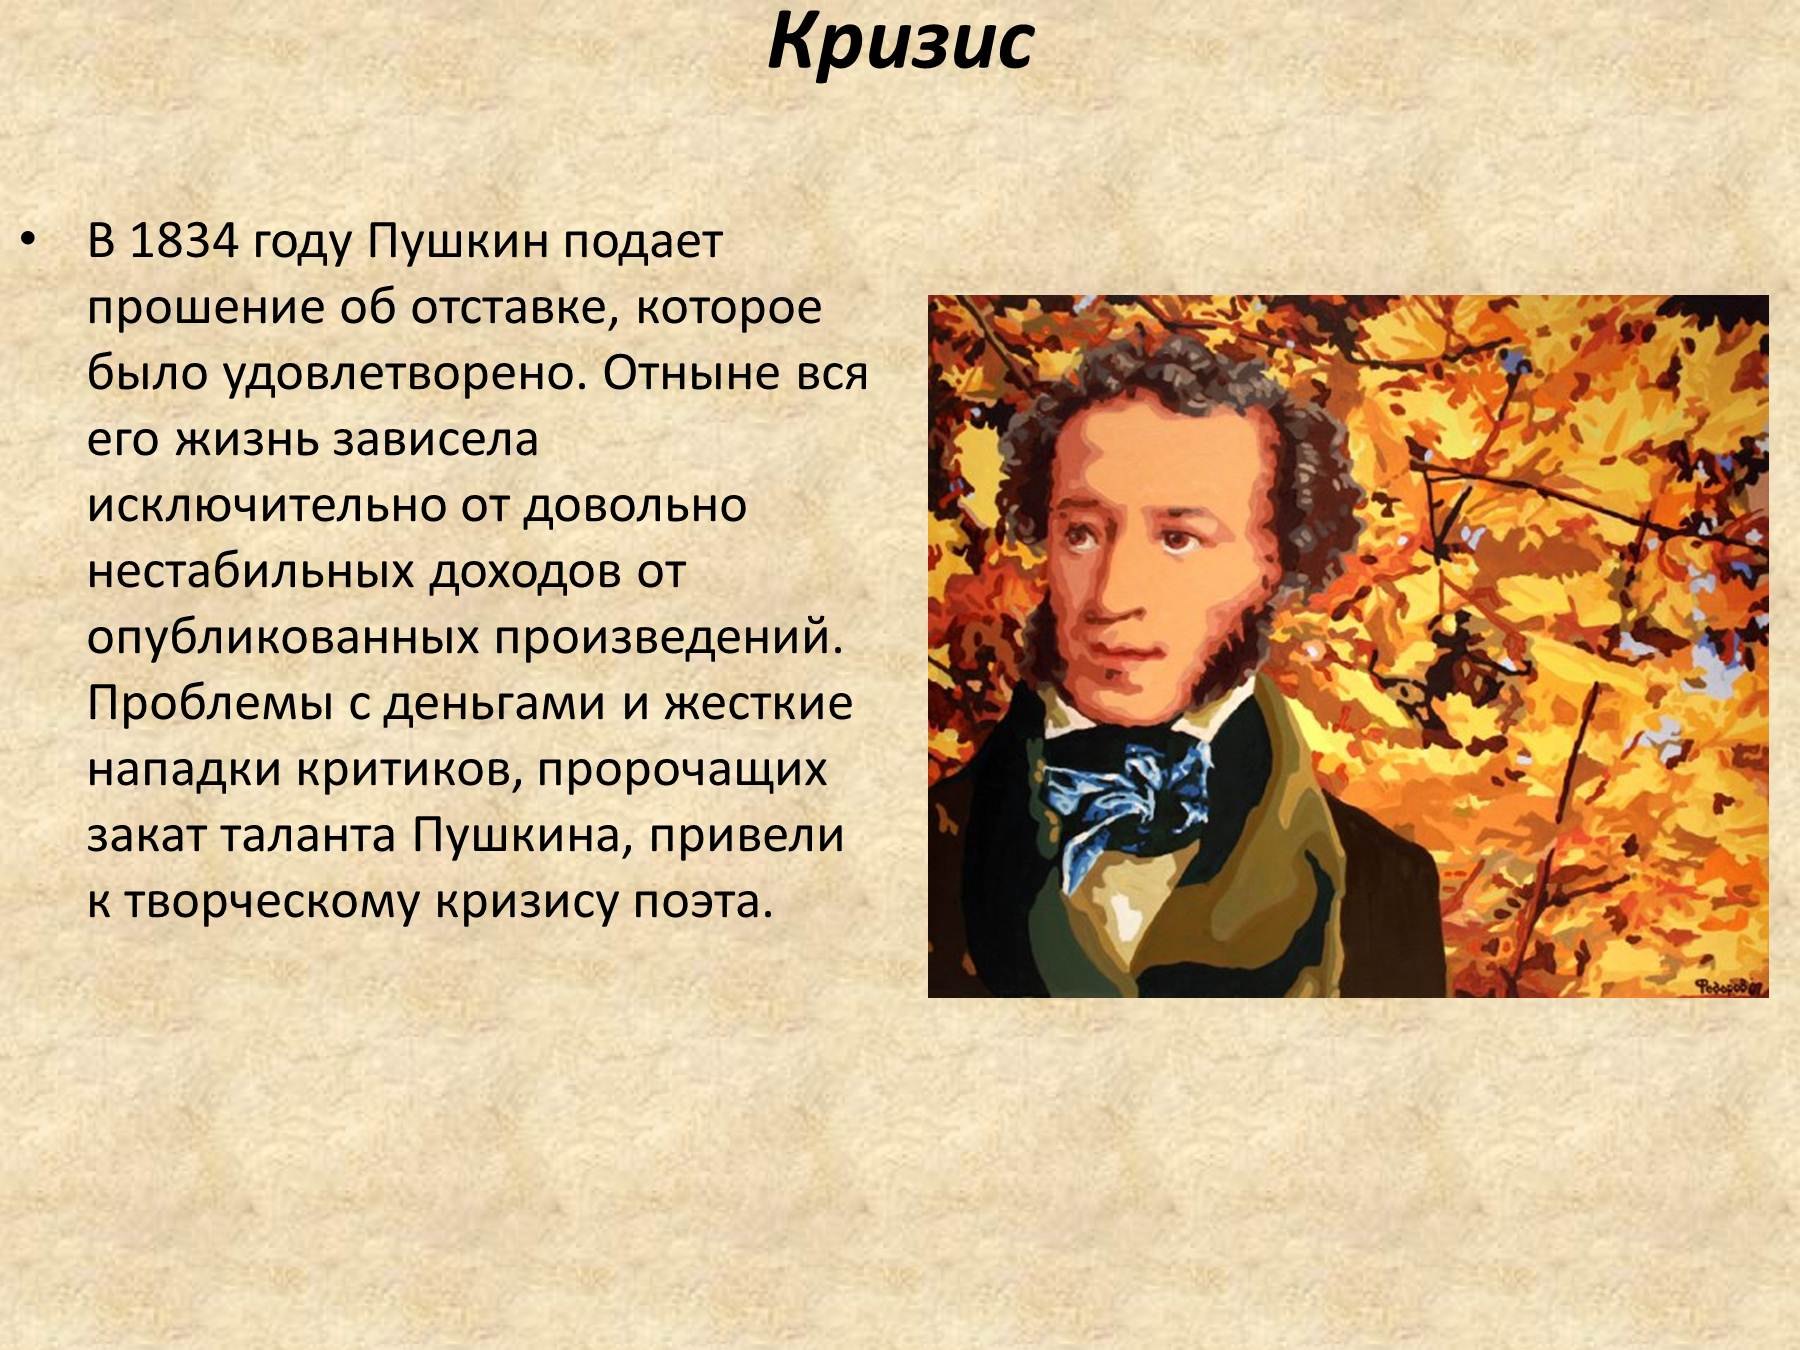 Факт о александре пушкине. Сообщение о Пушкине. Пушкин биография. Презентация о Пушкине.